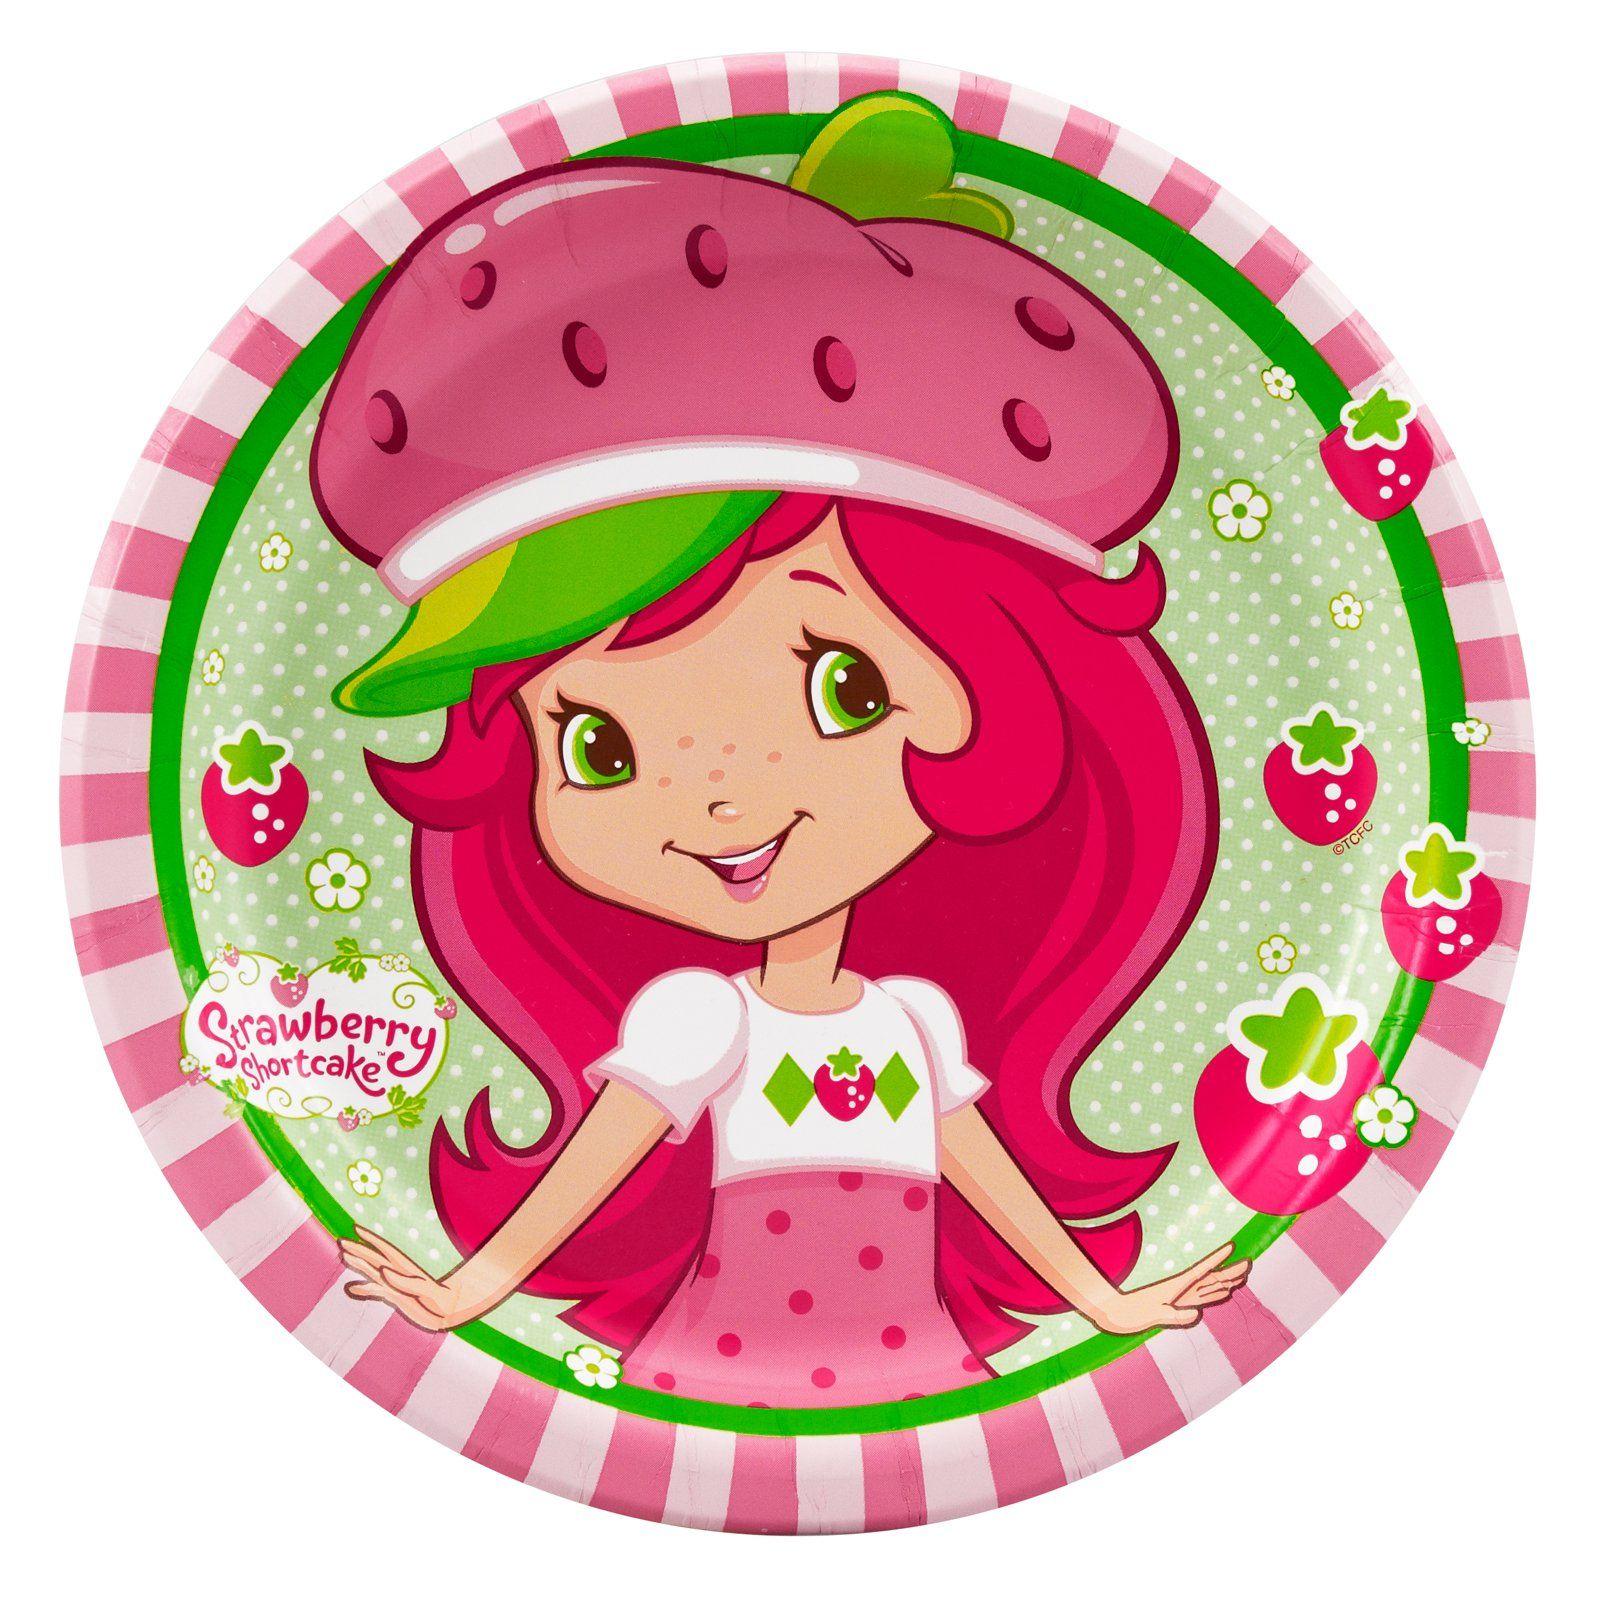 1000tvchannels taken from Strawberry Shortcake Wallpaper, cartoon